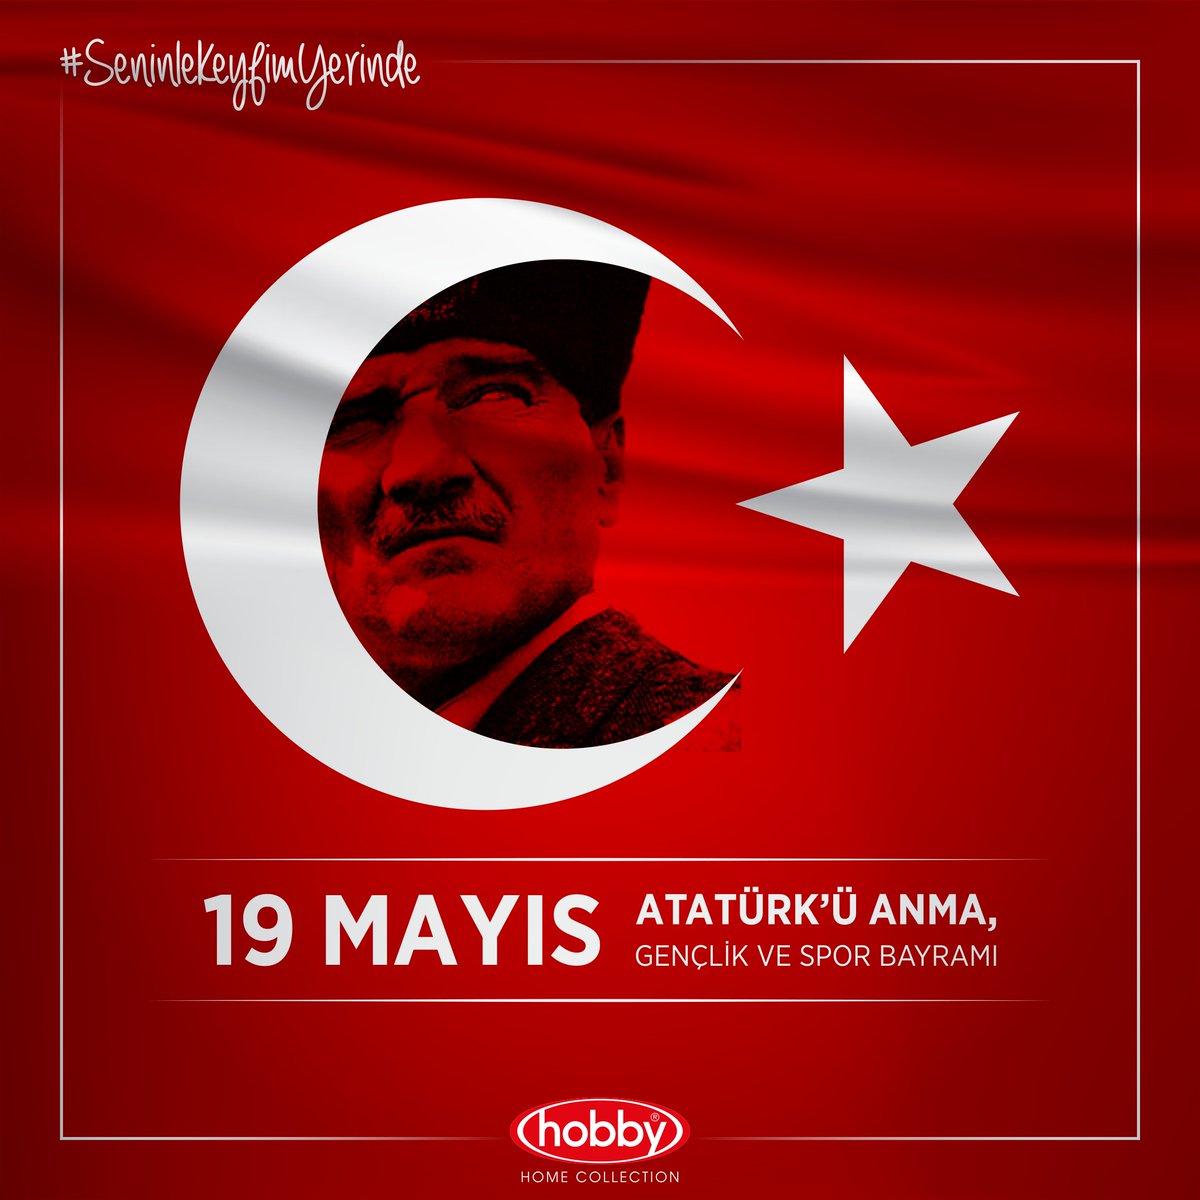 Işığınla, izinde yürüyoruz!..

19 Mayıs Atatürk'ü Anma Gençlik ve Spor Bayramımız Kutlu Olsun!.. 🇹🇷

#SeninleKeyfimYerinde #HobbyHomeCollection #19Mayıs #AtatürküAnma #GençlikVeSporBayramı #MustafaKemal #Atatürk #19Mayıs1919 #19MayısKutluOlsun #MustafaKemalAtatürk #izindeyiz